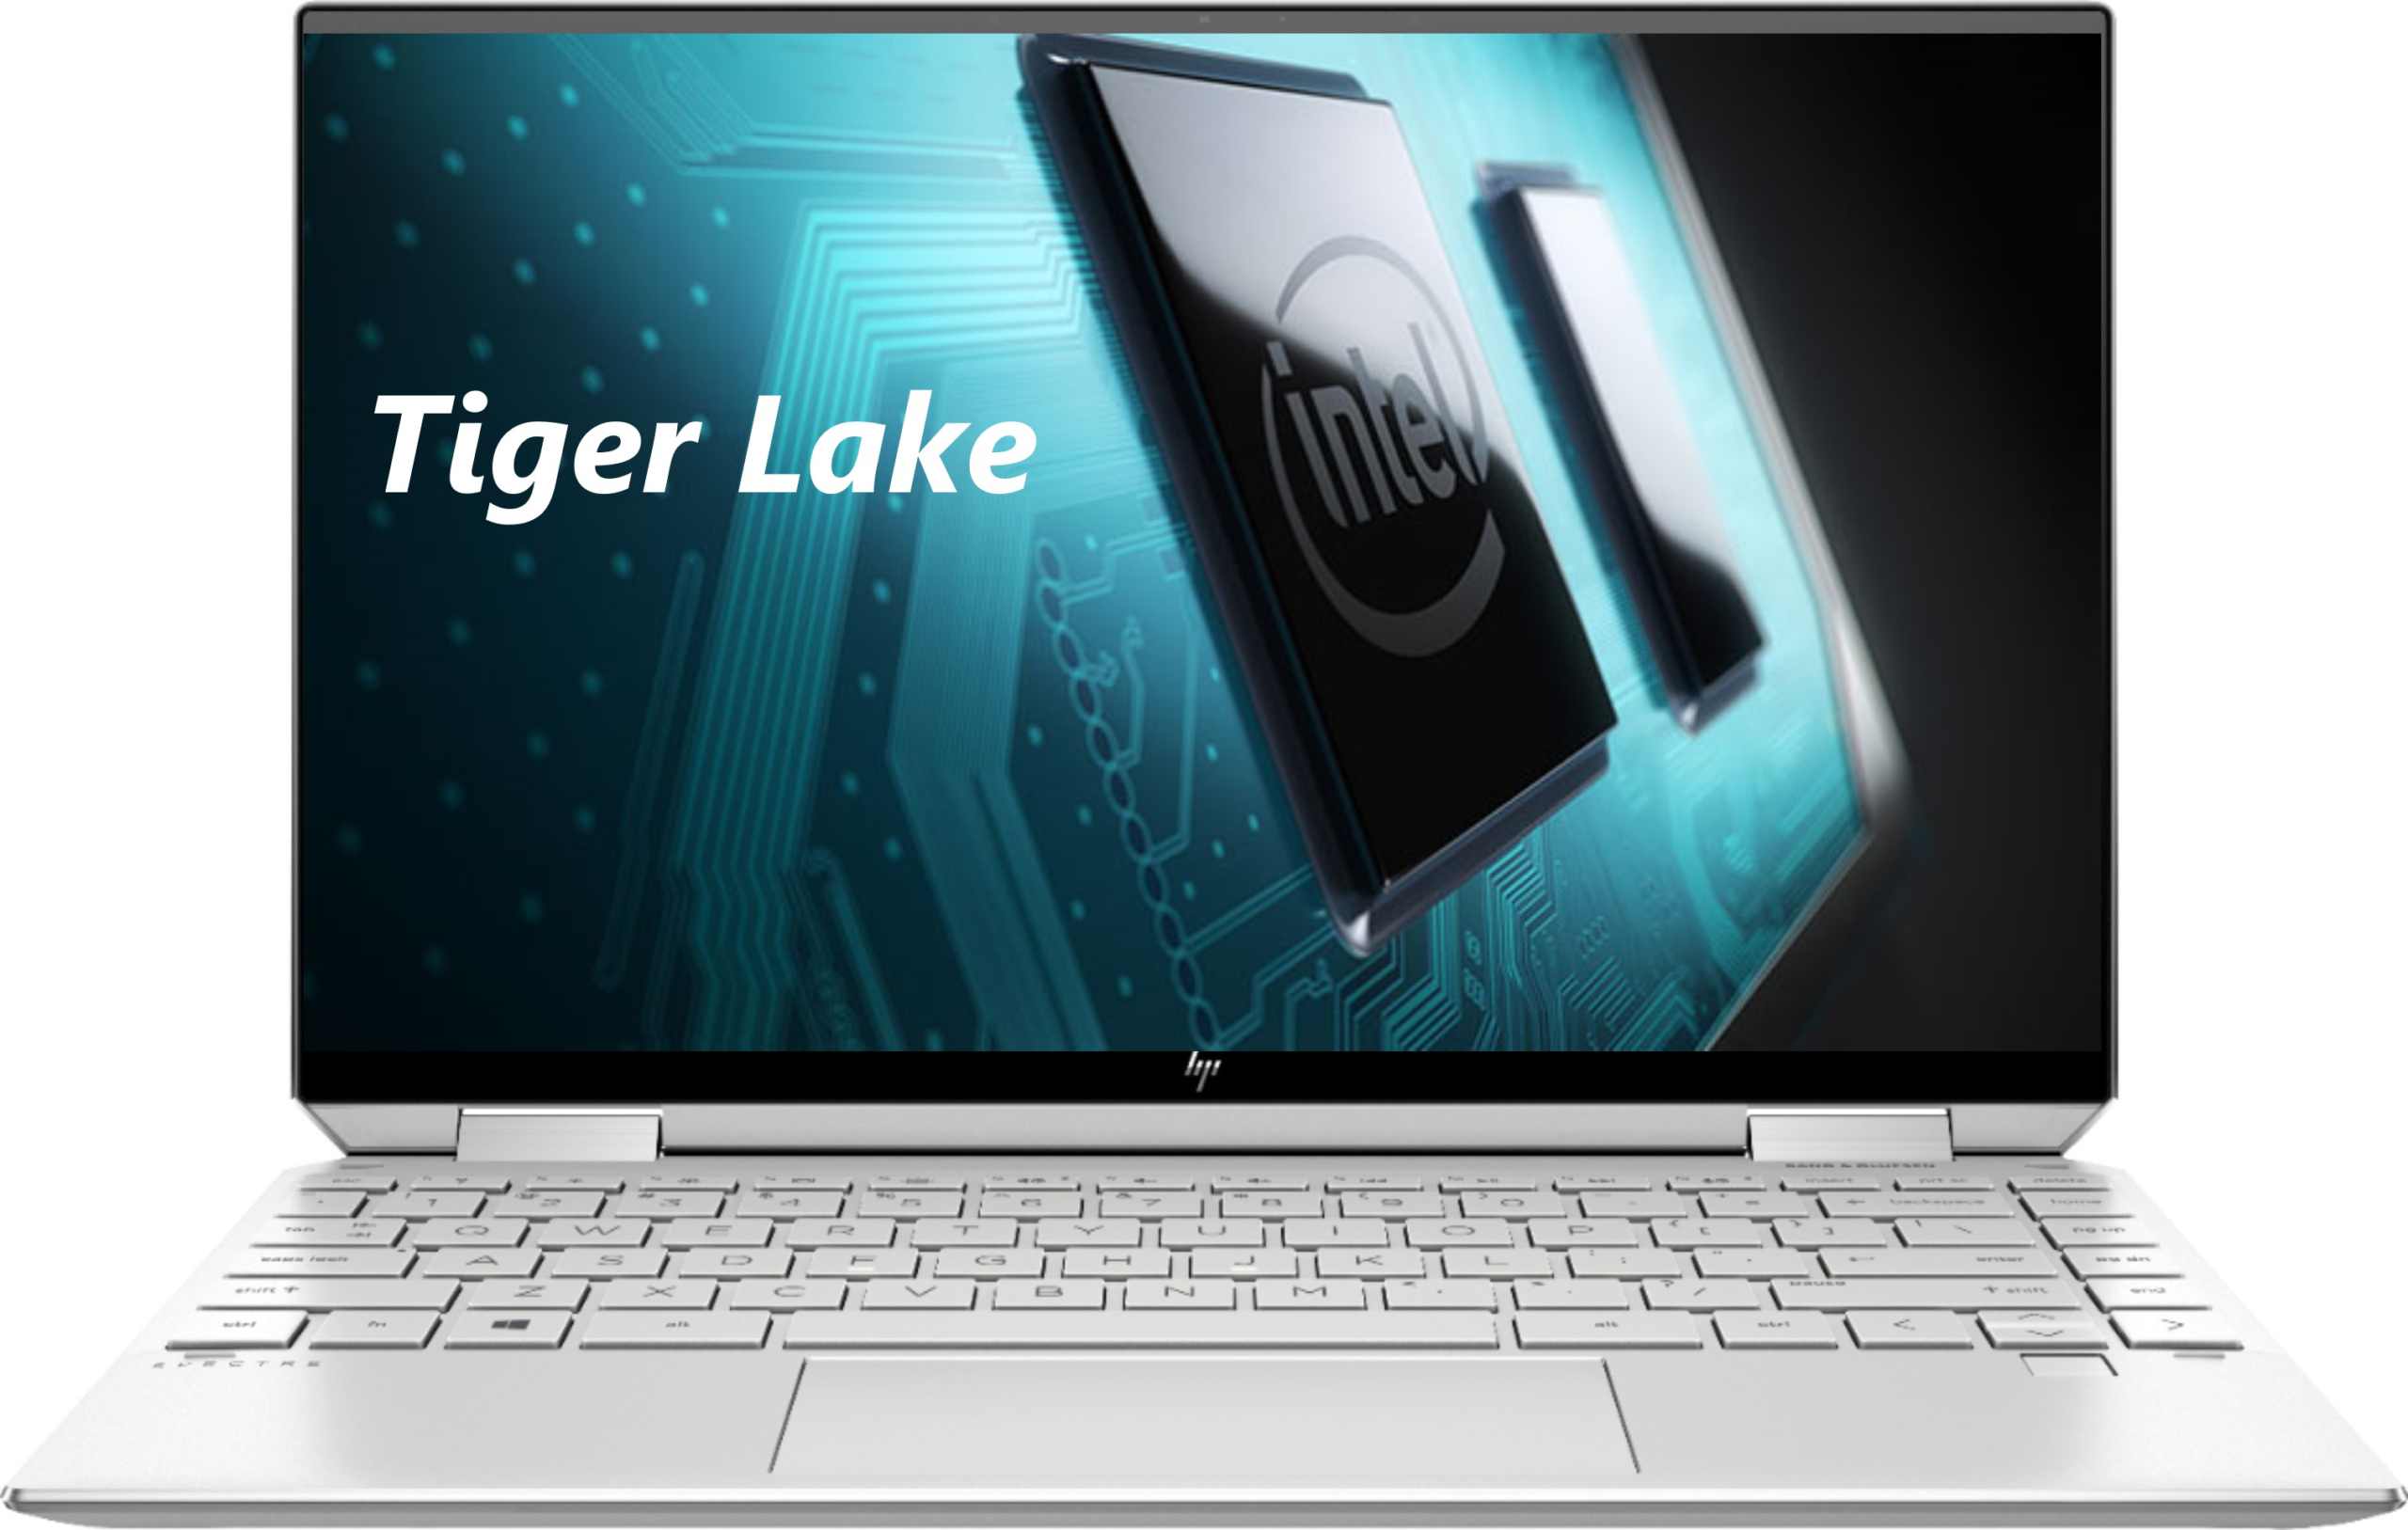 Intel Tiger lake